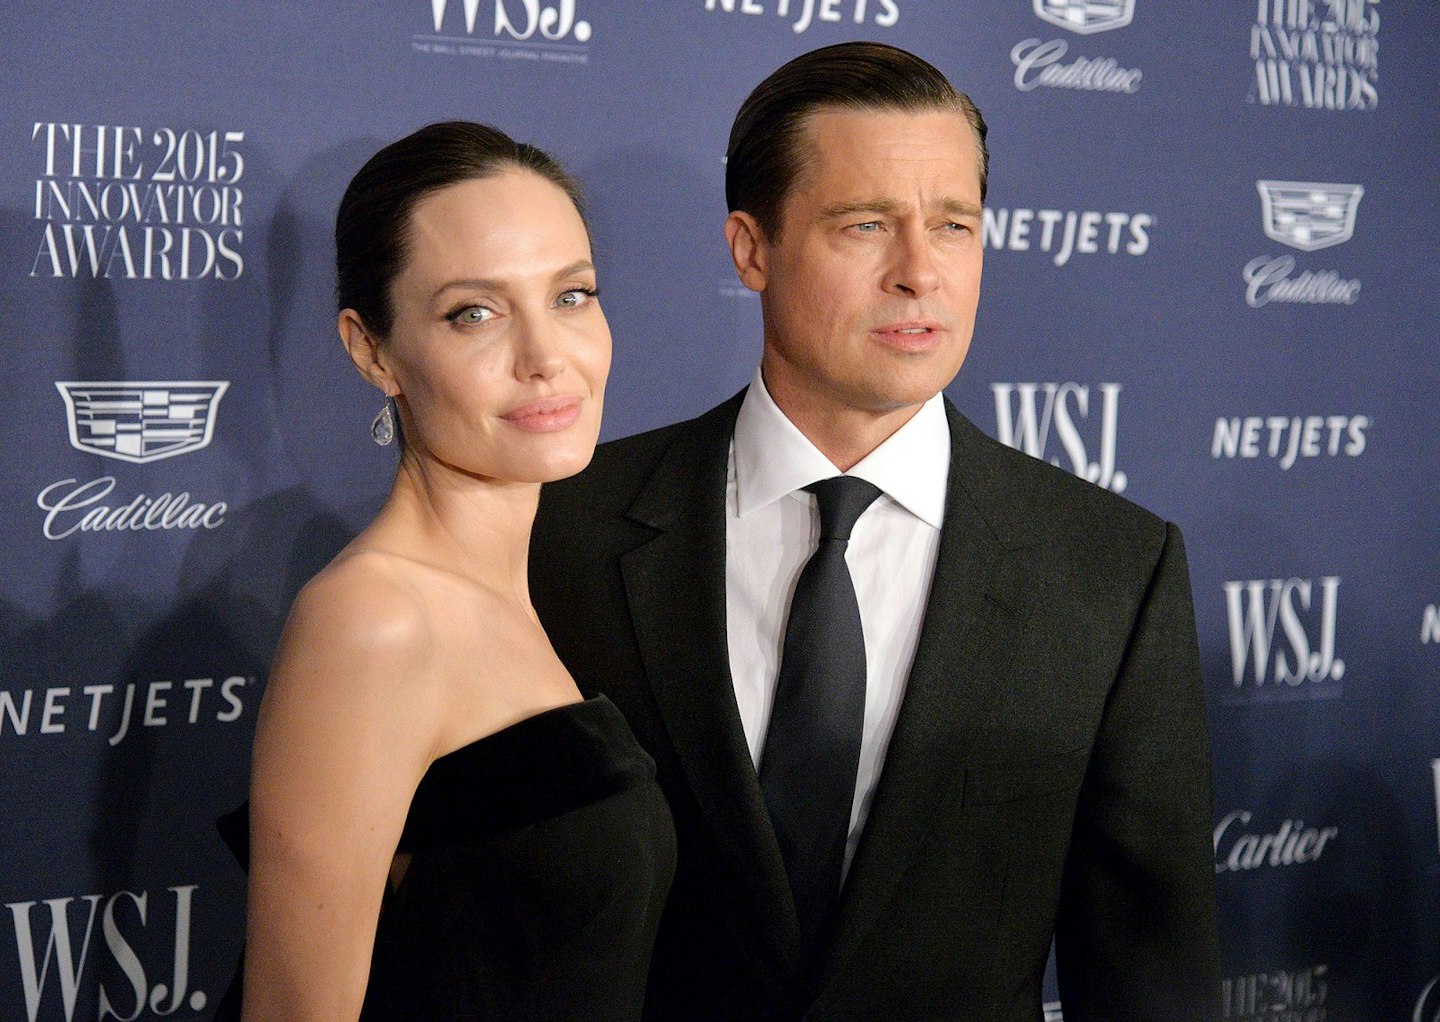 Brad and Angelina – the ongoing divorce saga